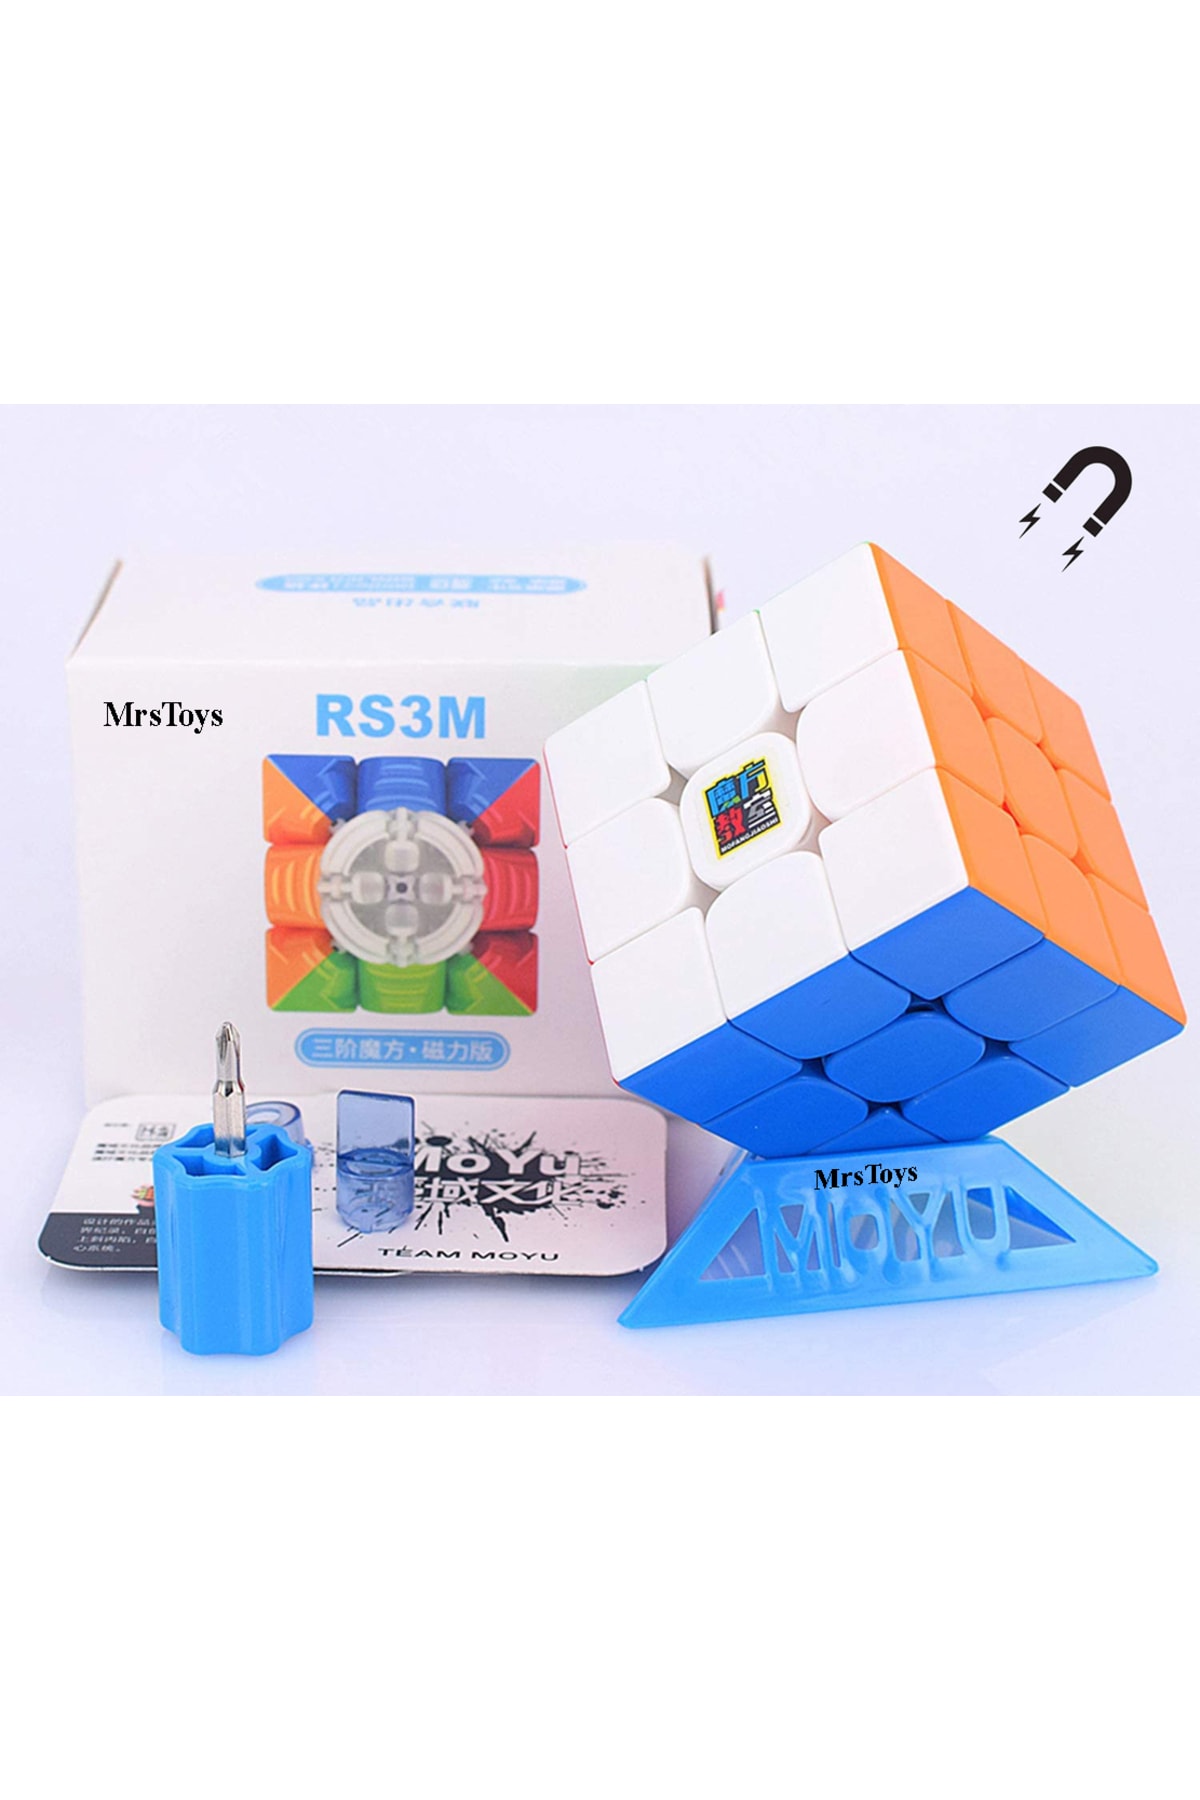 MRSTOYS Moyu Rs3m Magnetic 3x3+ Küp Yağı Hediye Zeka Küpü Sabır Küpü Akıl Küpü Sihirli Küp